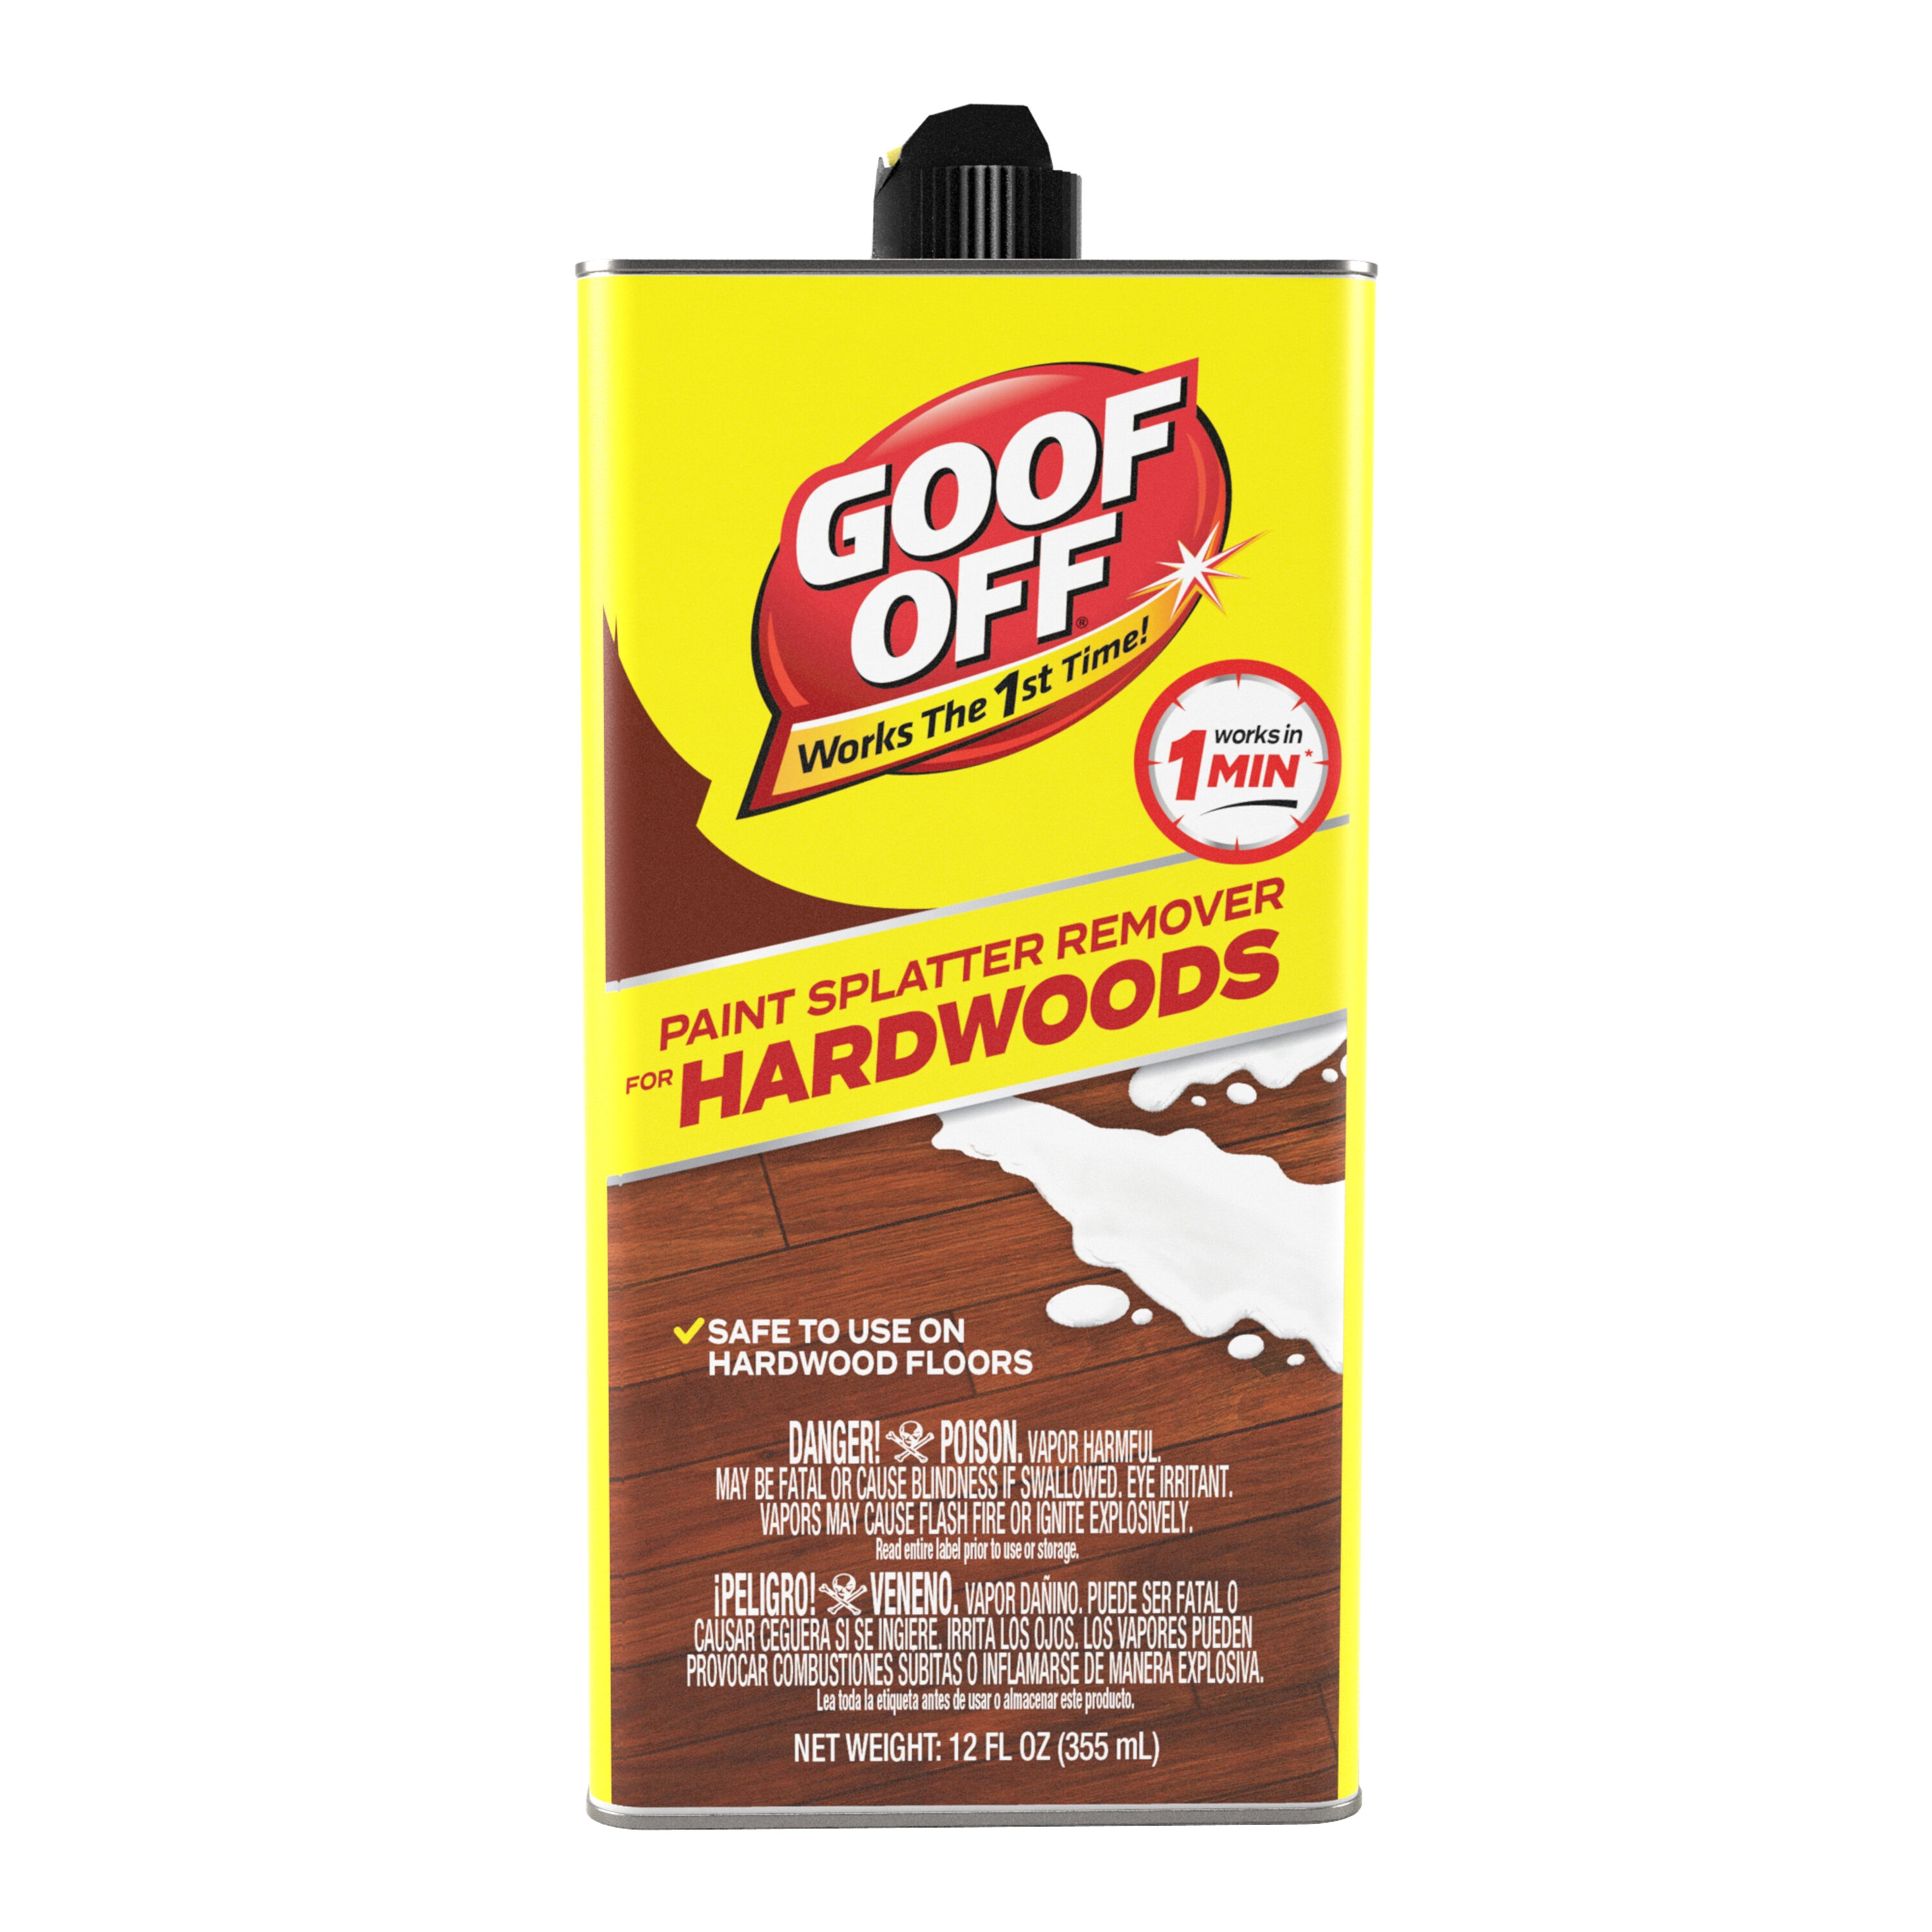 Buy Goof Off Paint Splatter Remover 12 Oz.